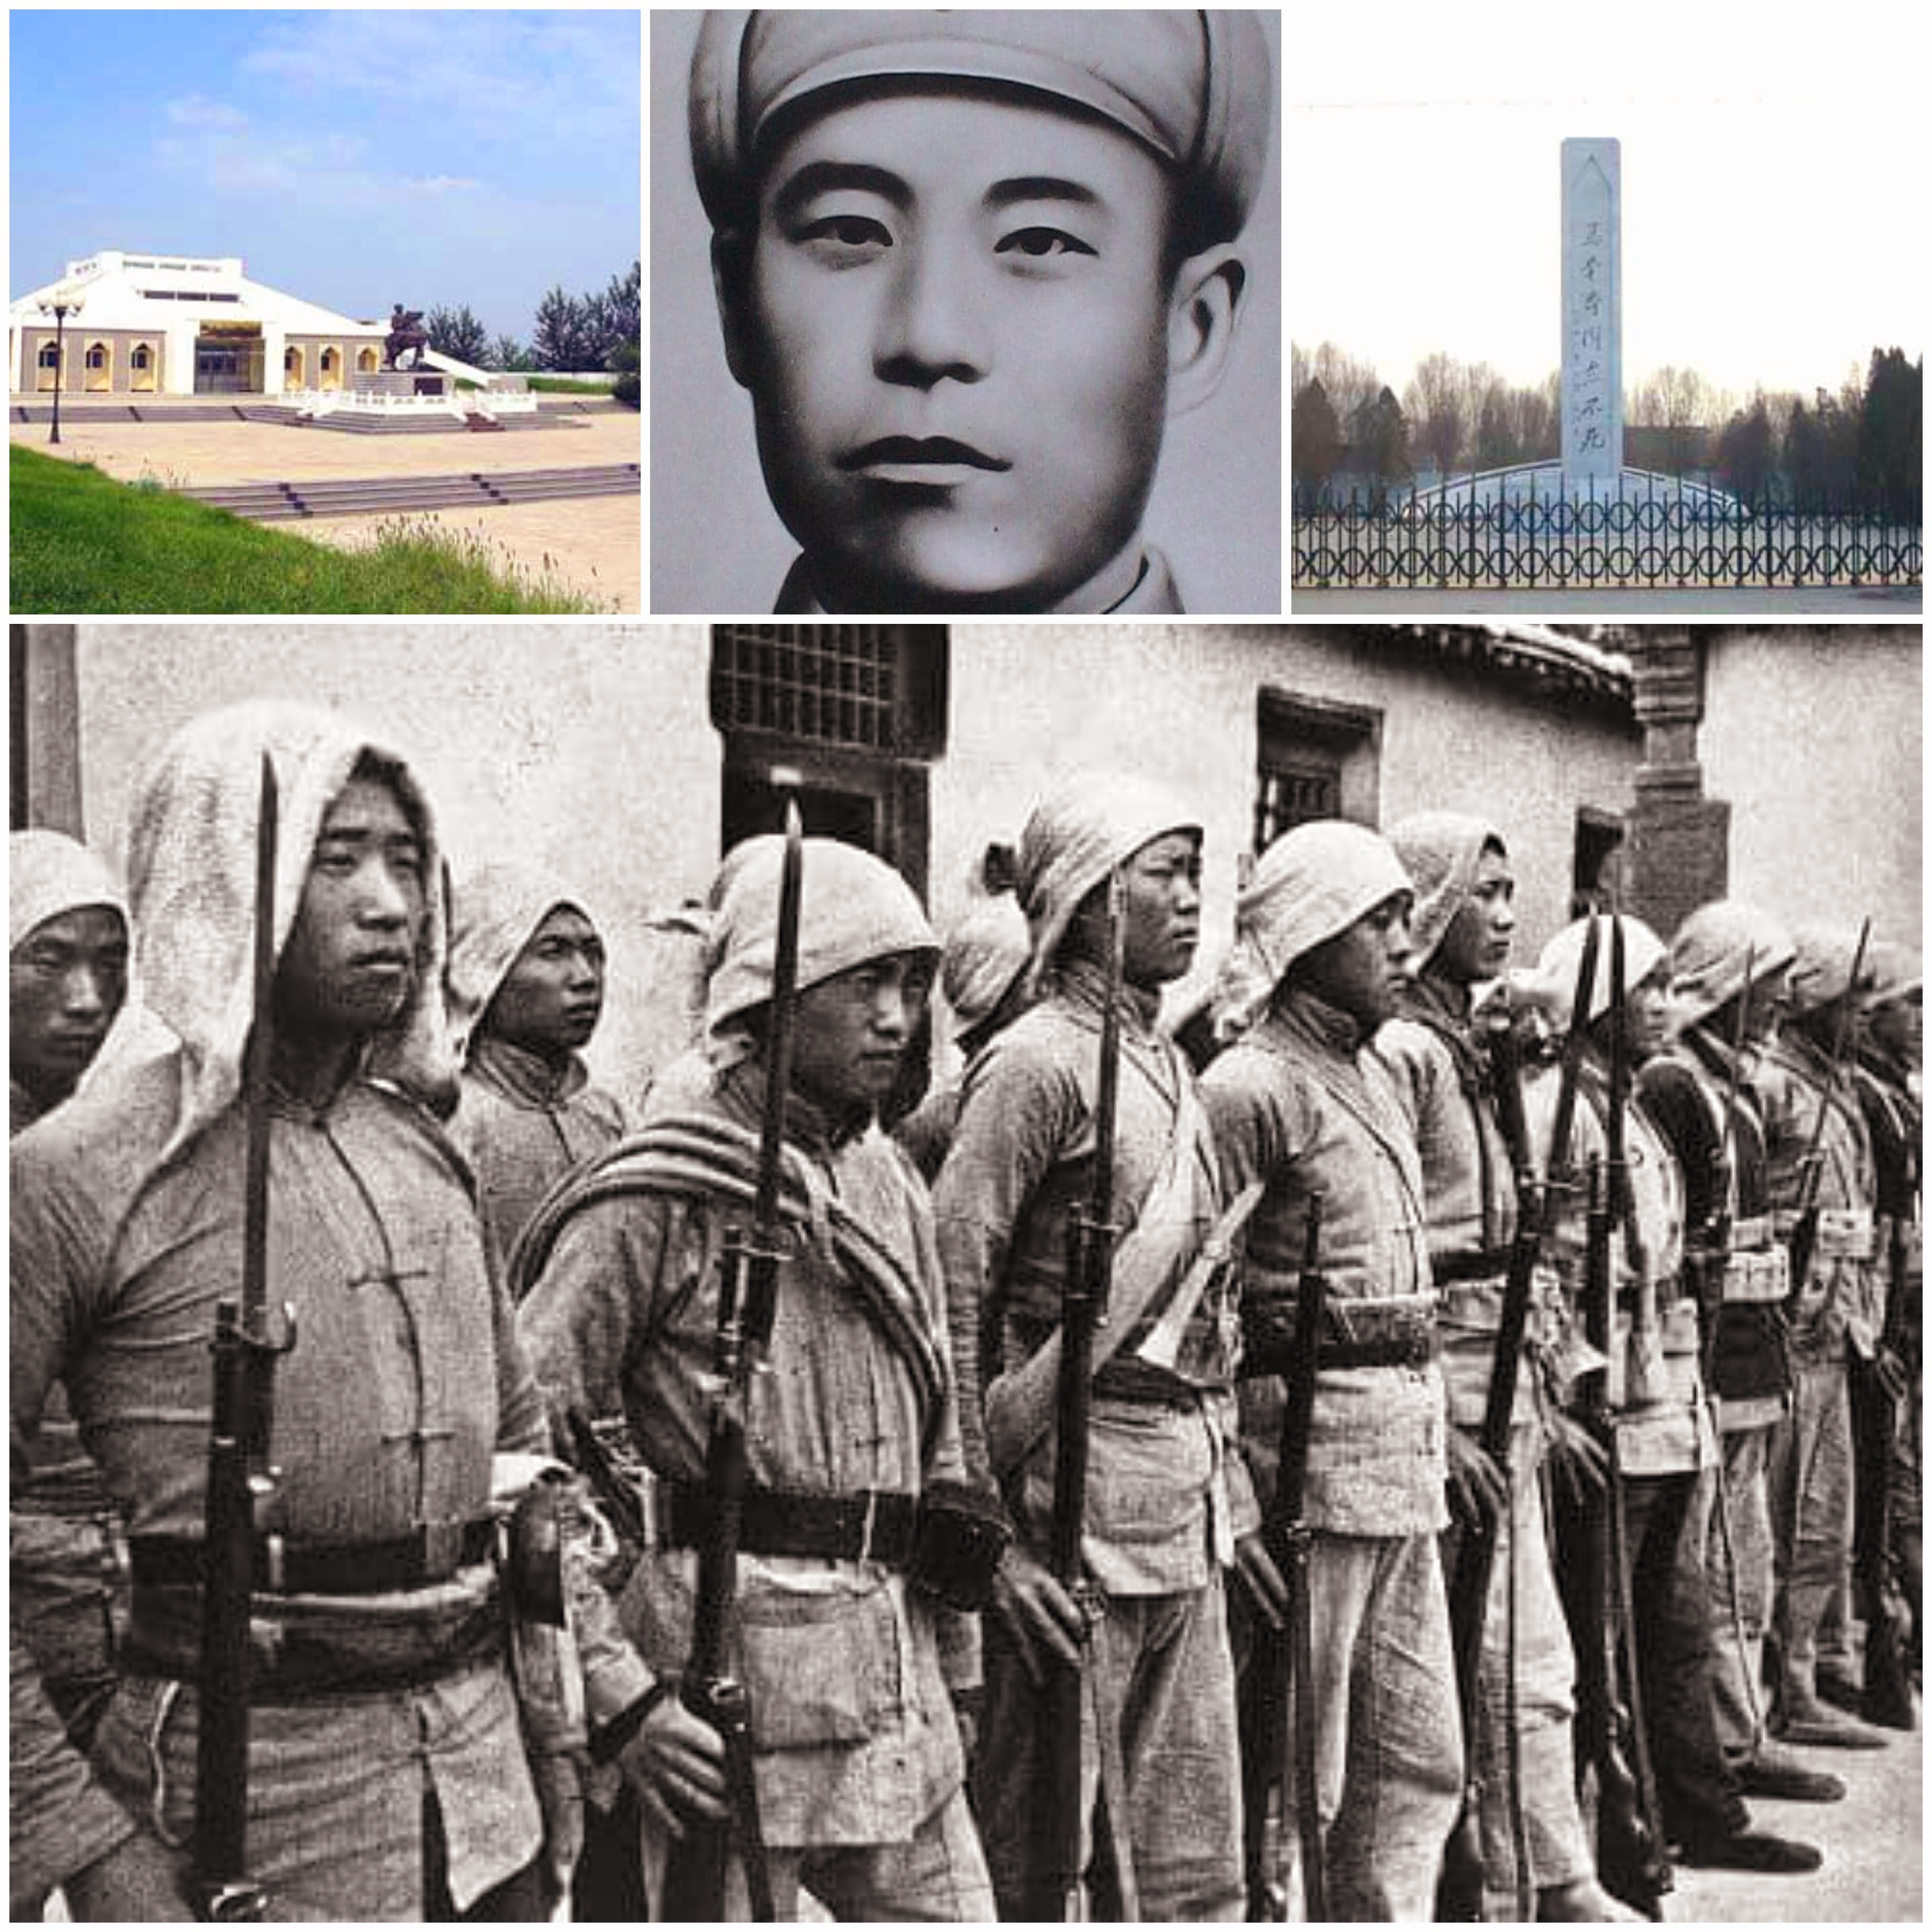 شاعت شهرة "ما بن تشاي"، العسكرية و"فصيلة قومية هوي" القتالية في الحرب الصينية اليابانية؛ فنال الكثير من التكريم والإشادة في الصين.